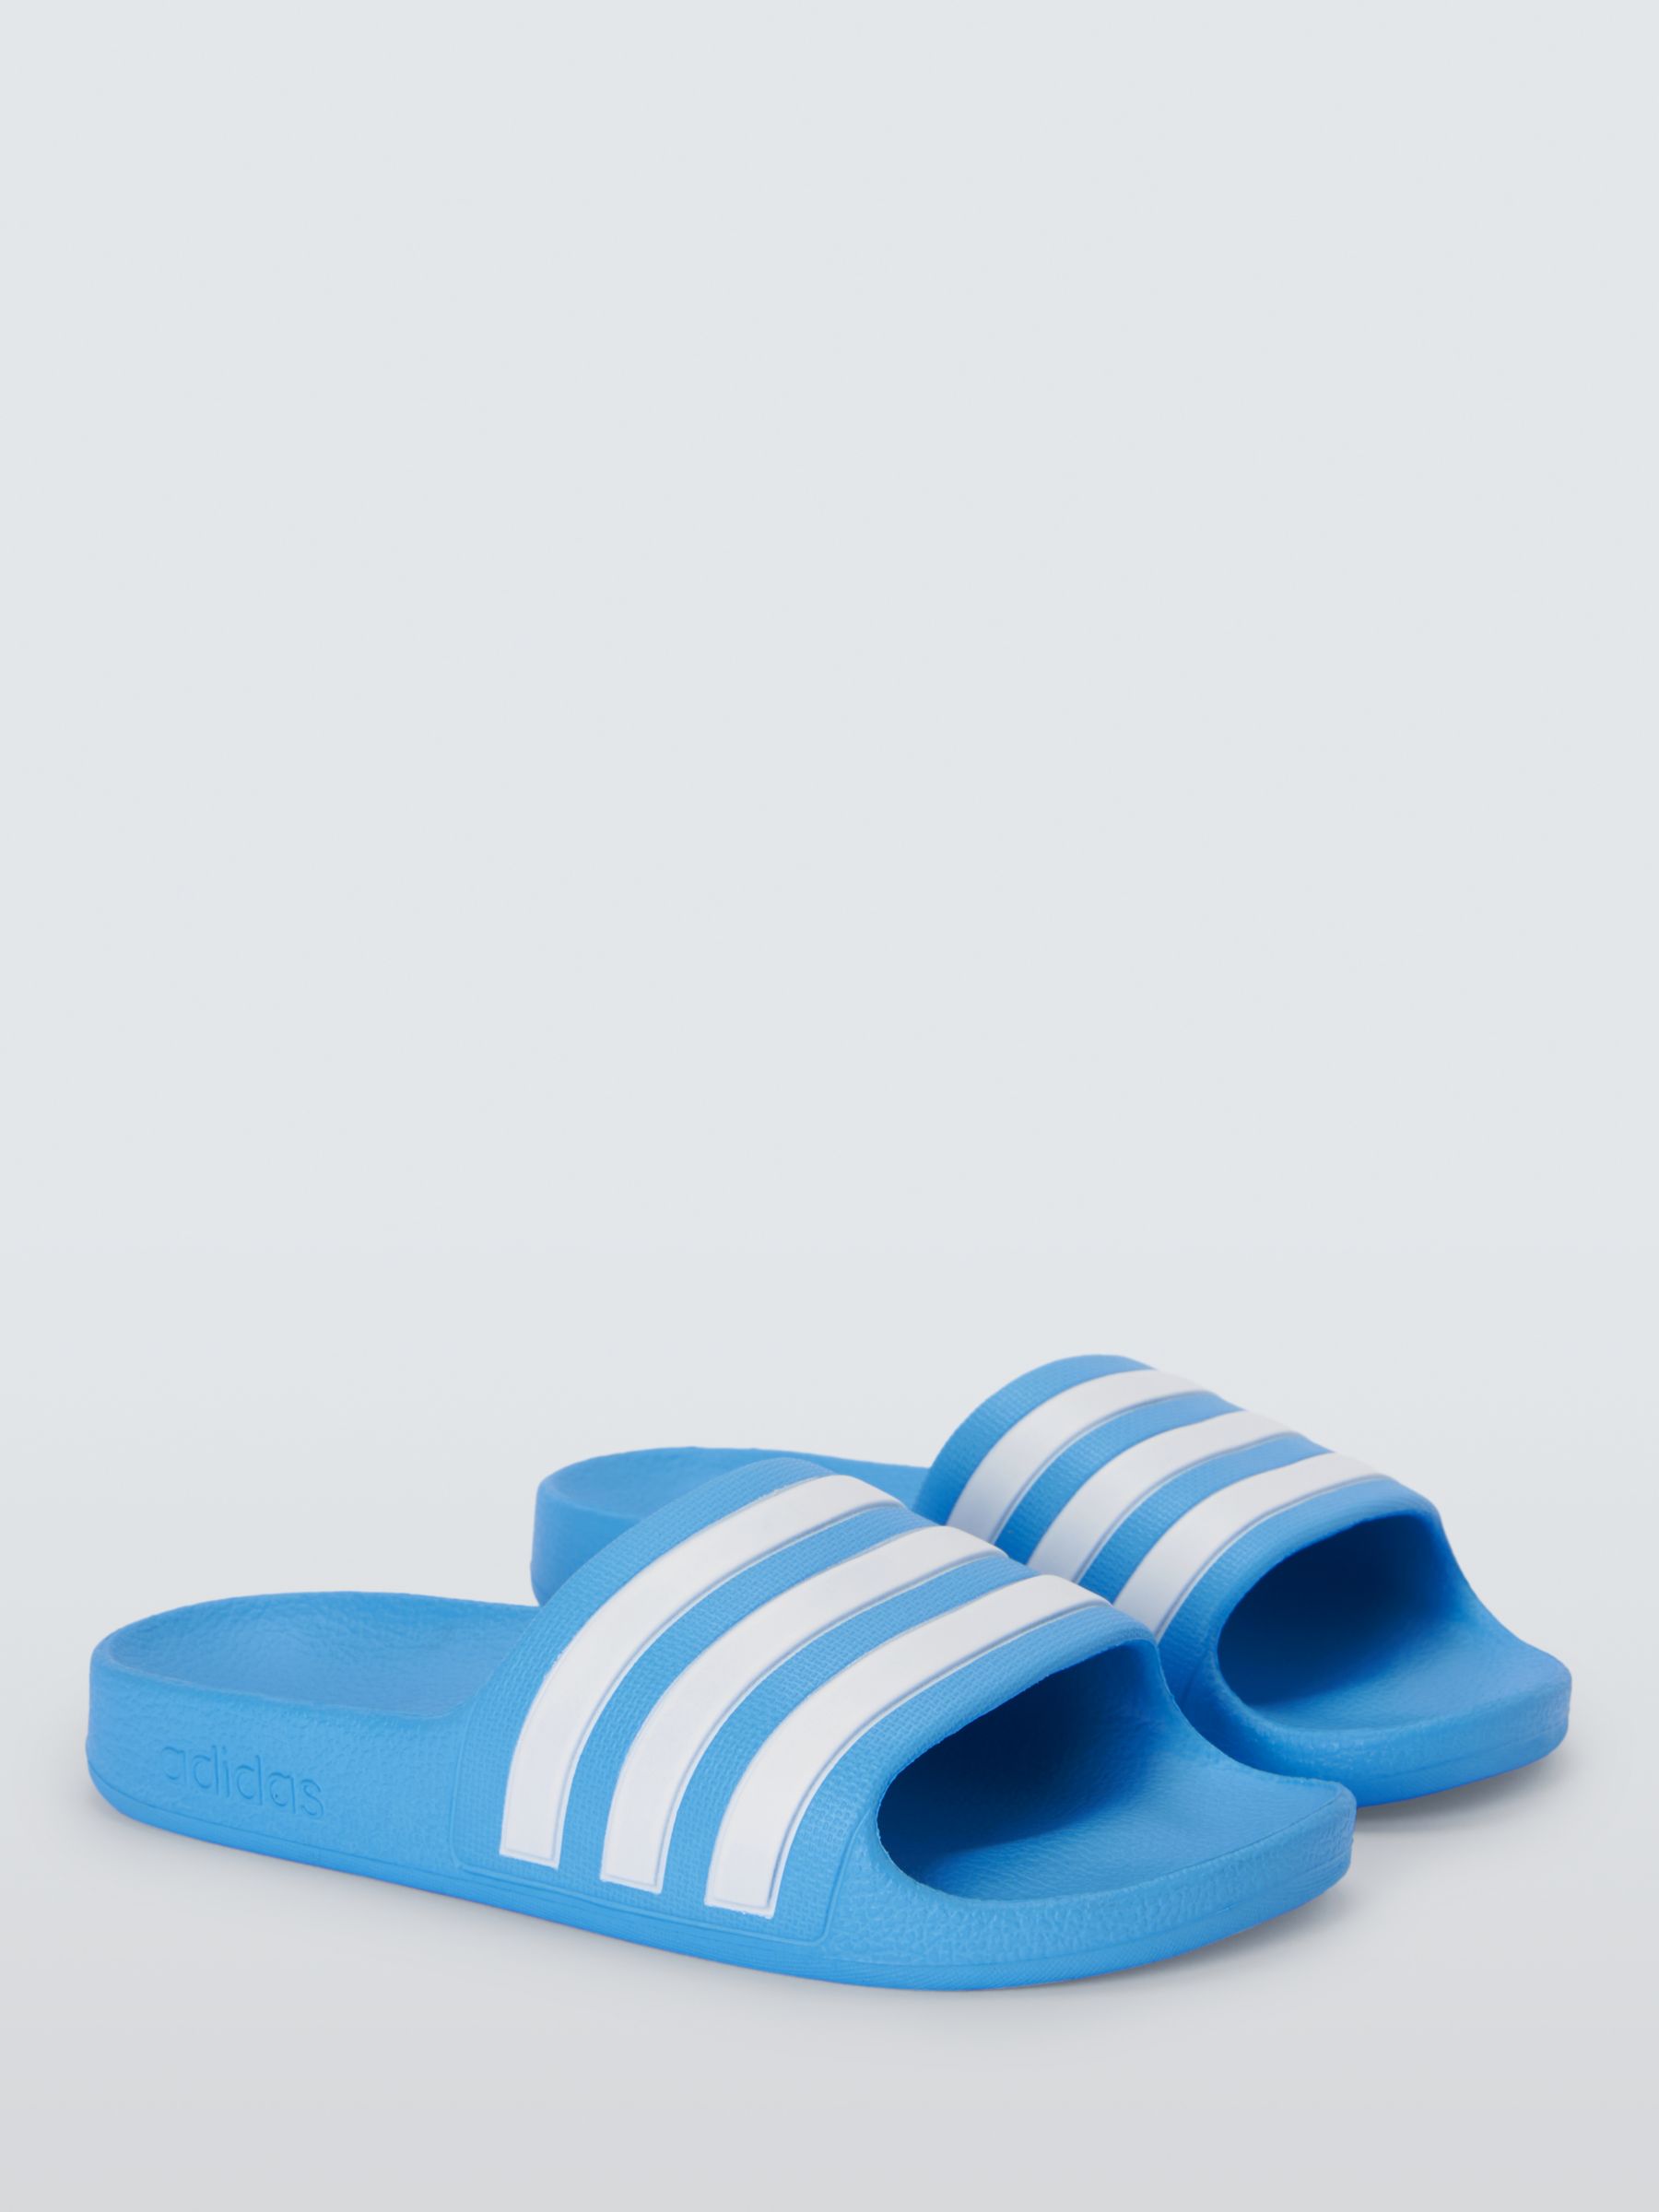 adidas Kids' Adilette Aqua Shower Stripe Sliders, Blue, 3